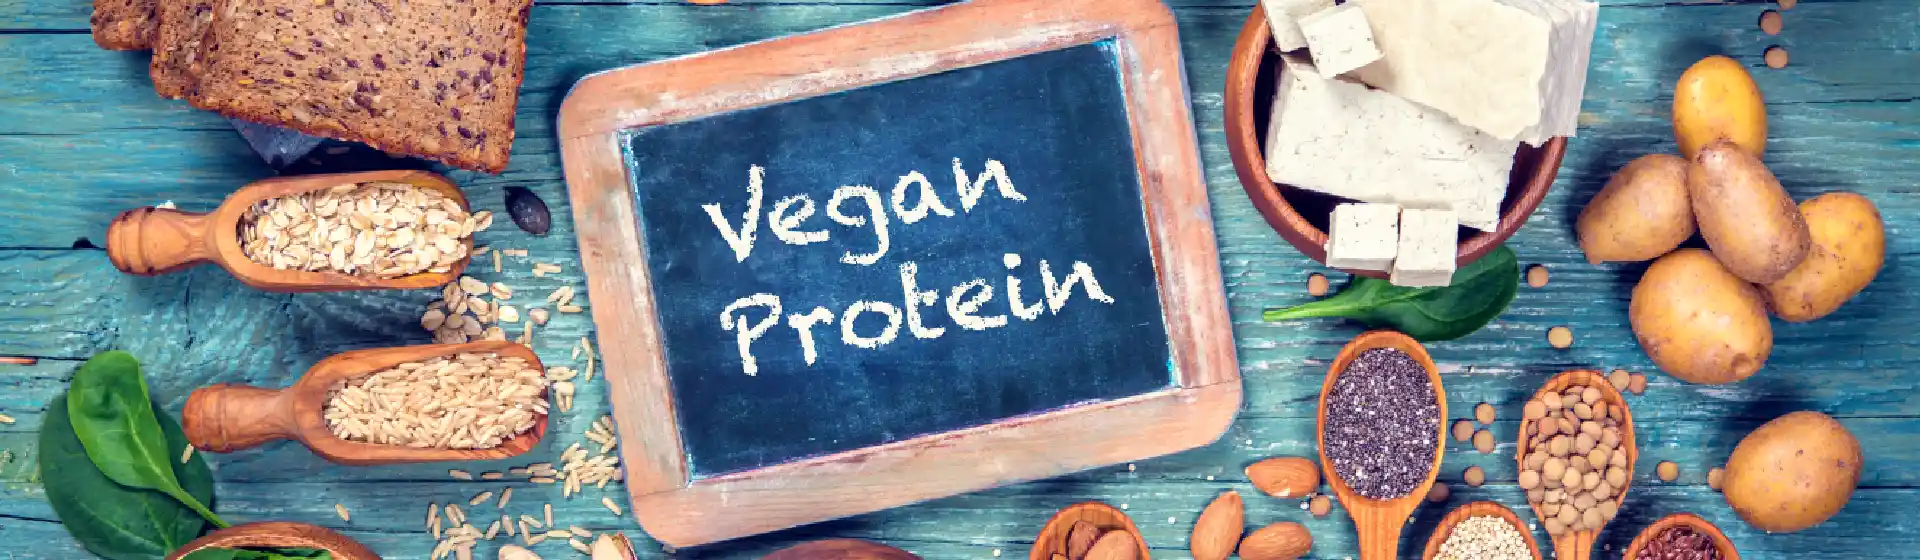 Em uma superfície plana está um quadro negro escrito “ vegan protein” com diversos vegetais e leguminosas ao redor dele.